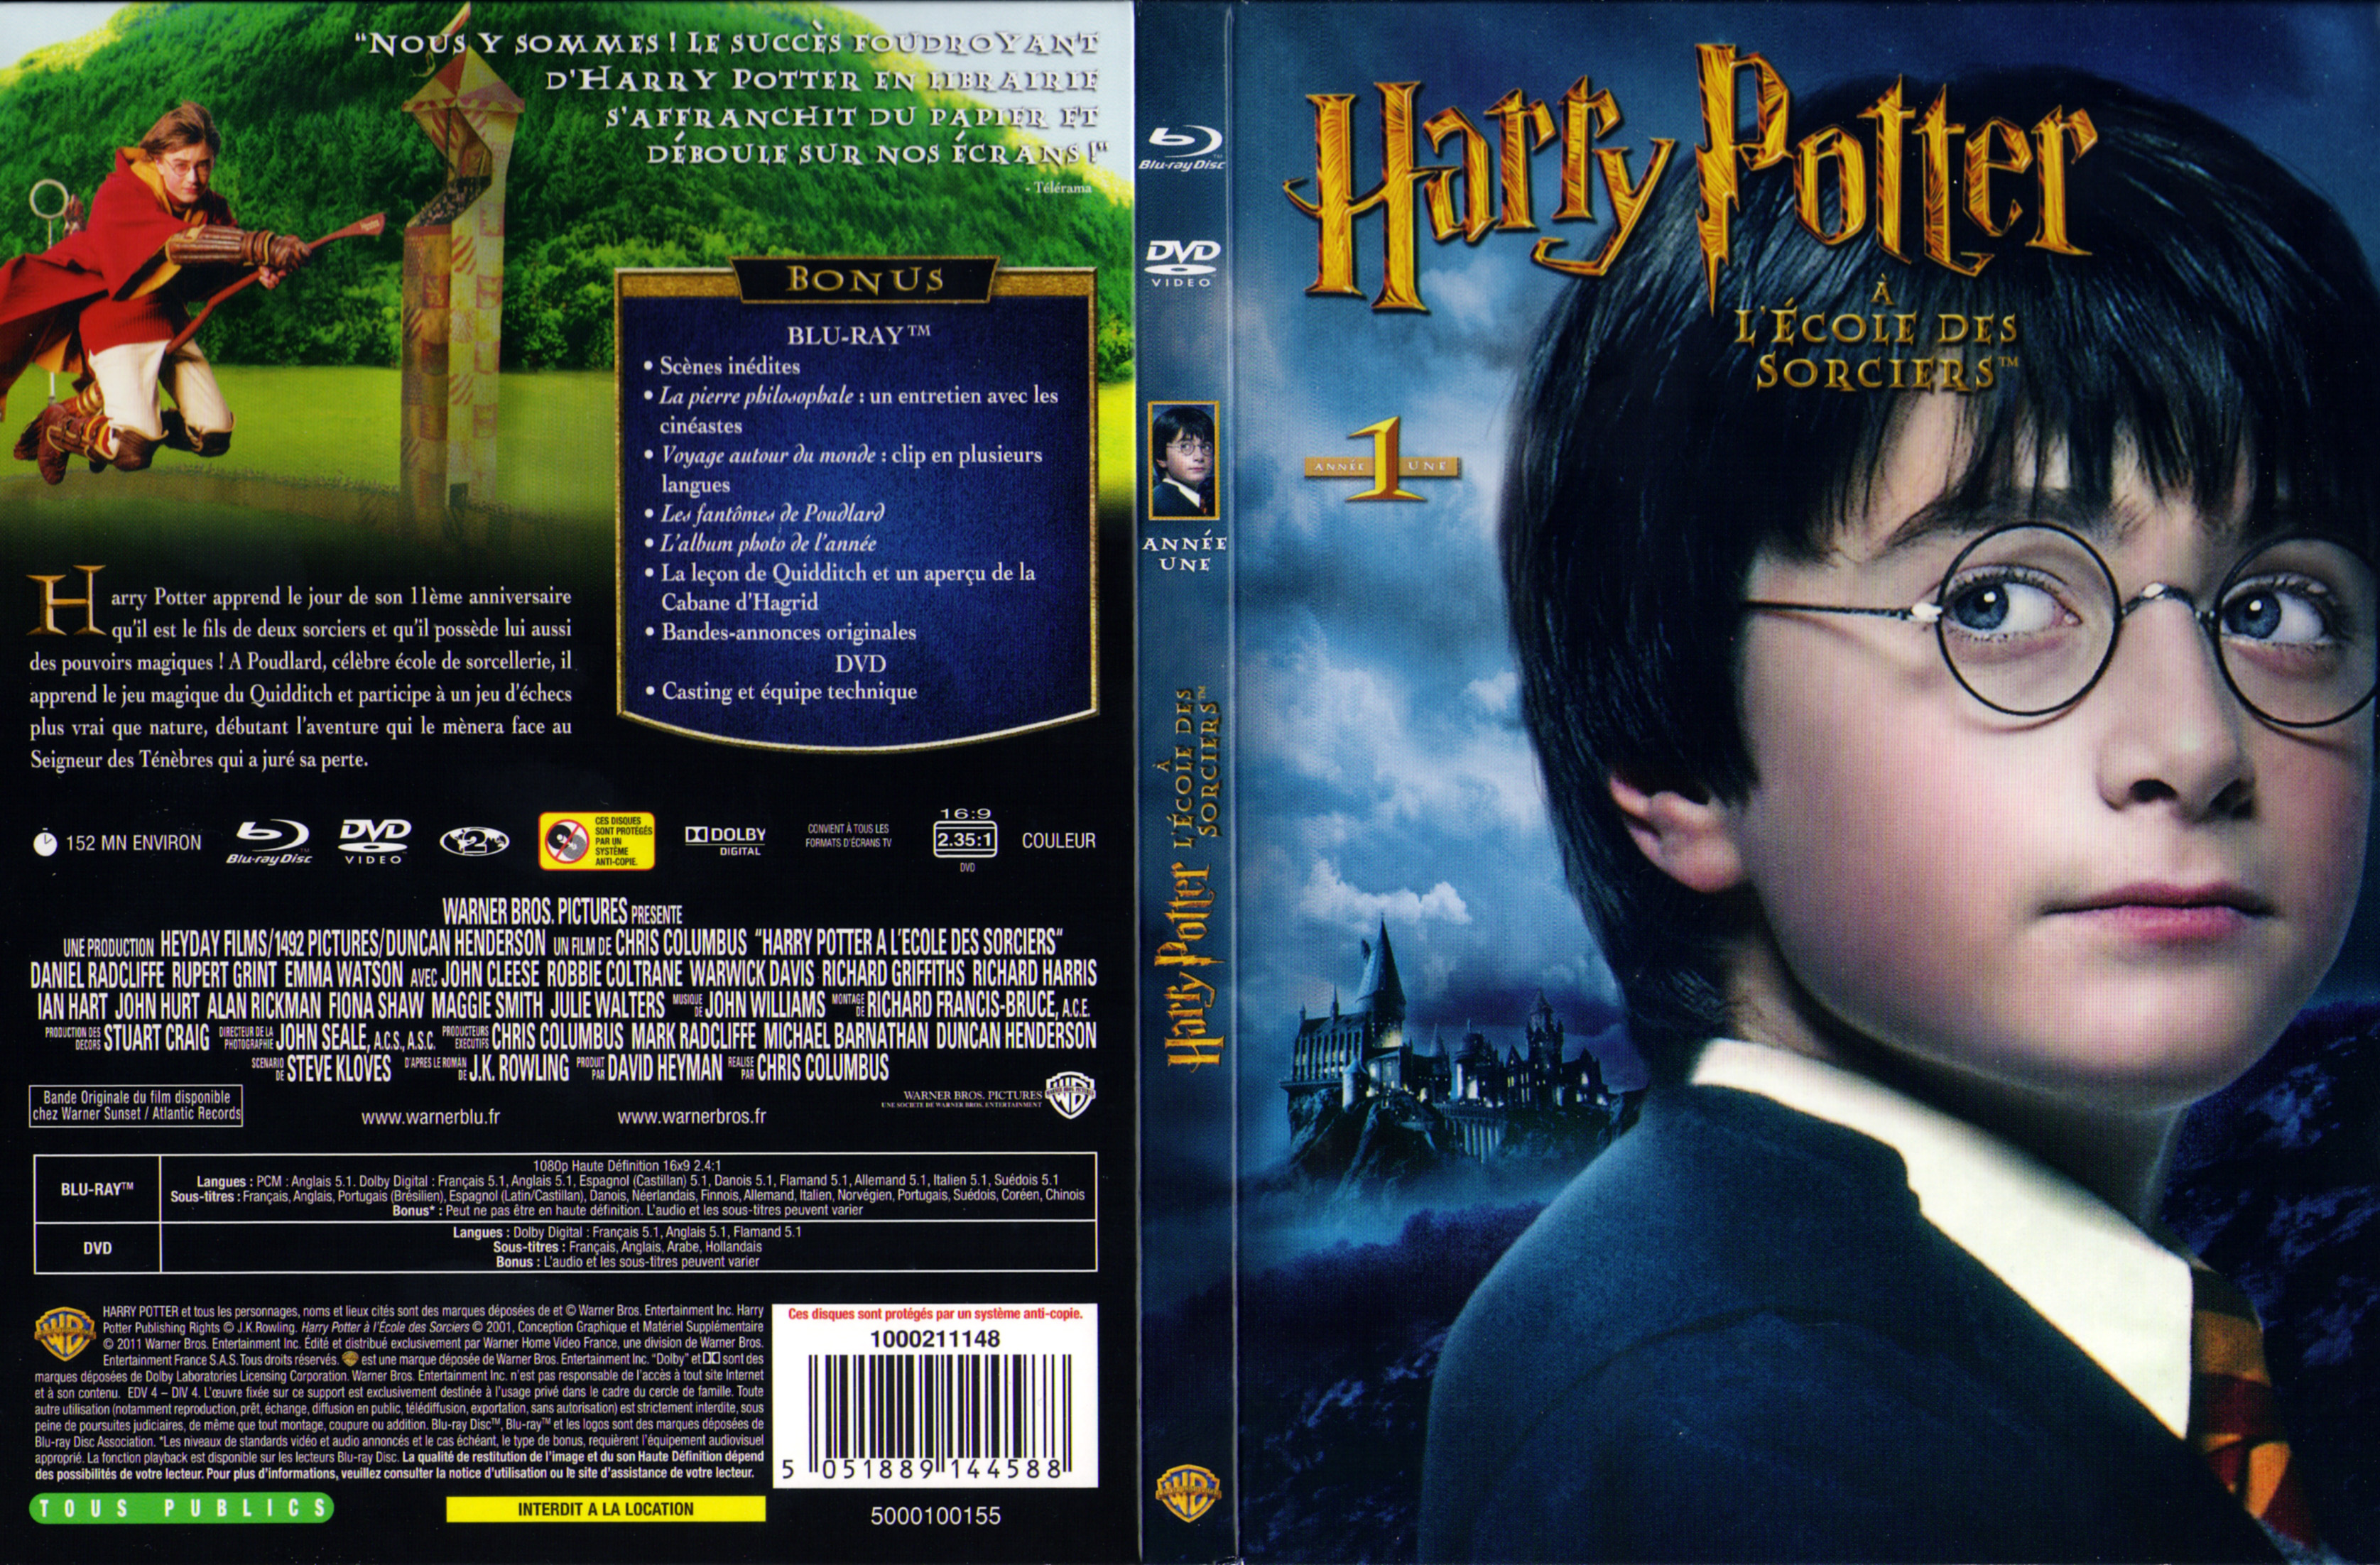 Jaquette DVD Harry Potter  l